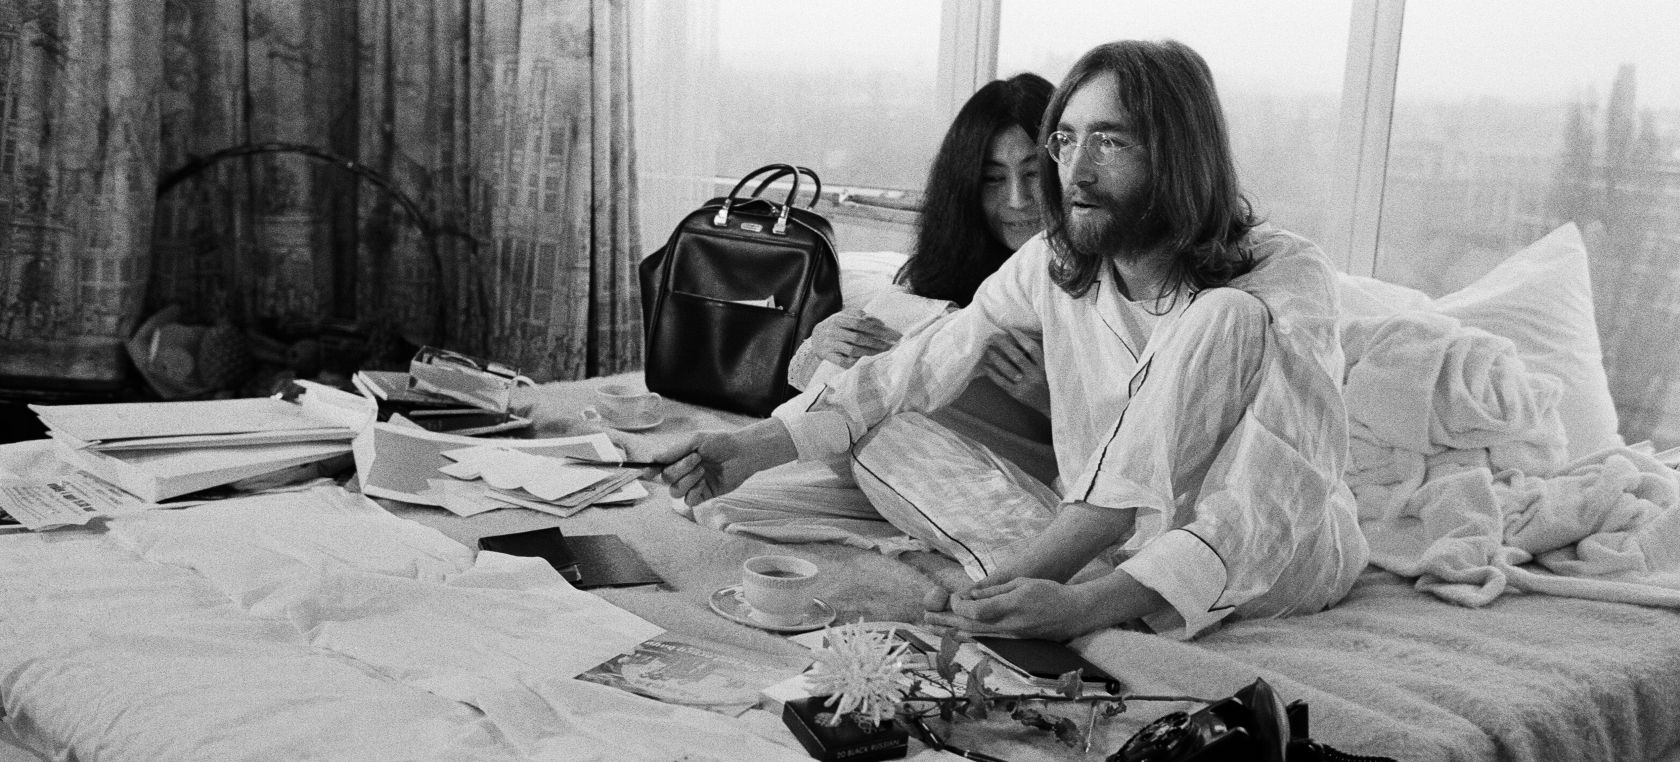 En la cama por la paz: la protesta de John Lennon y Yoko Ono cumple 50 años